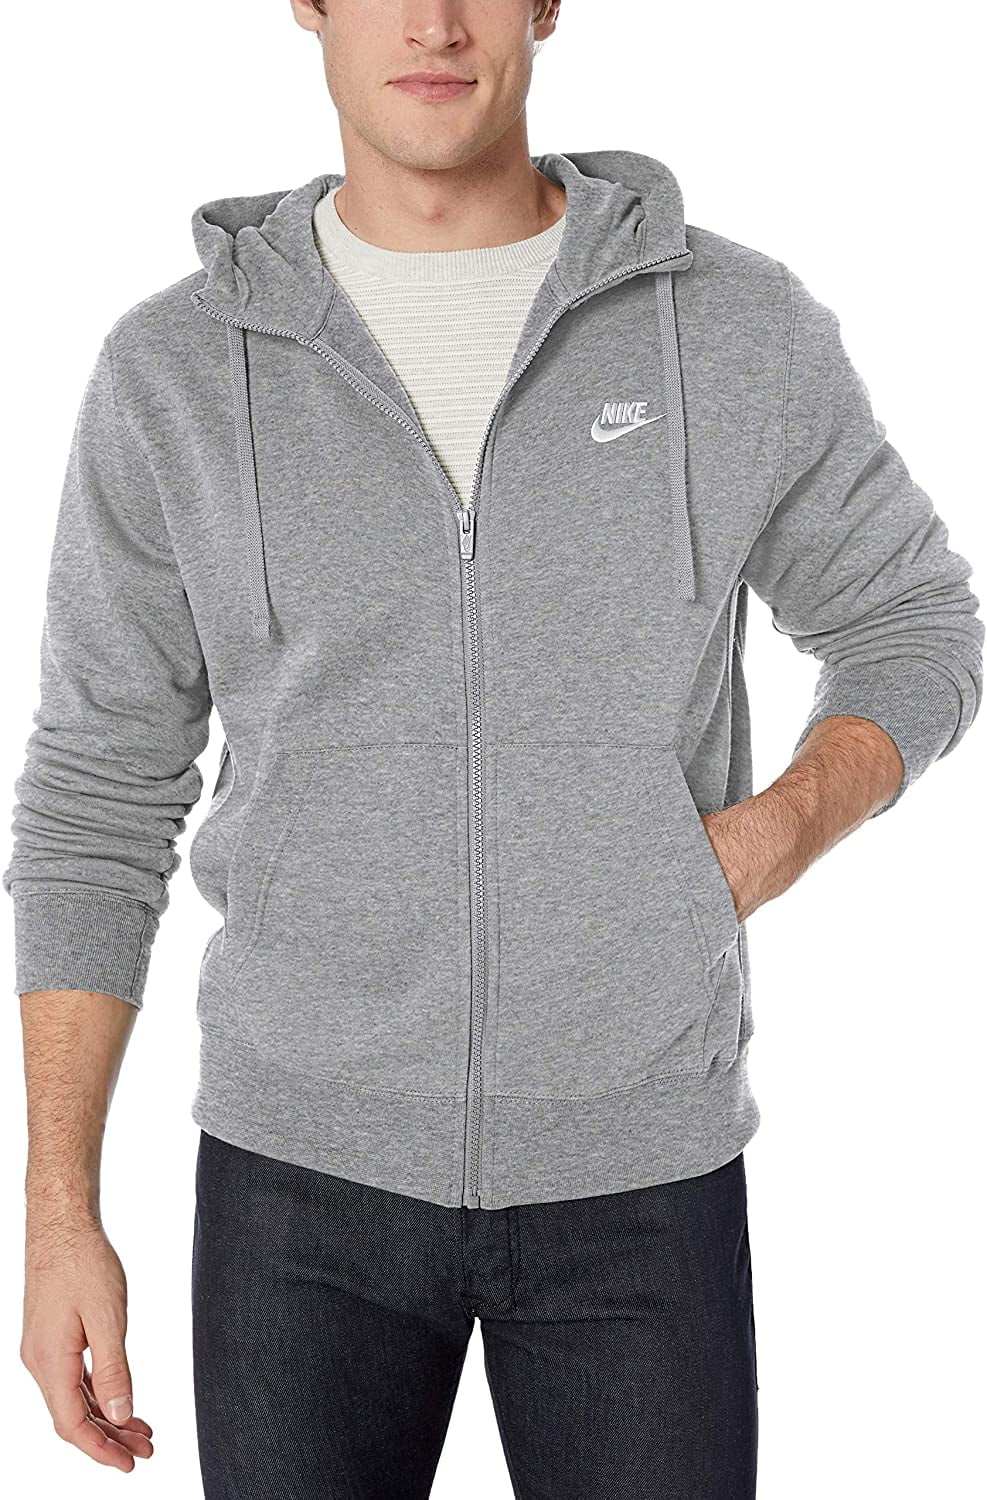 nike zip up hoodie grey mens